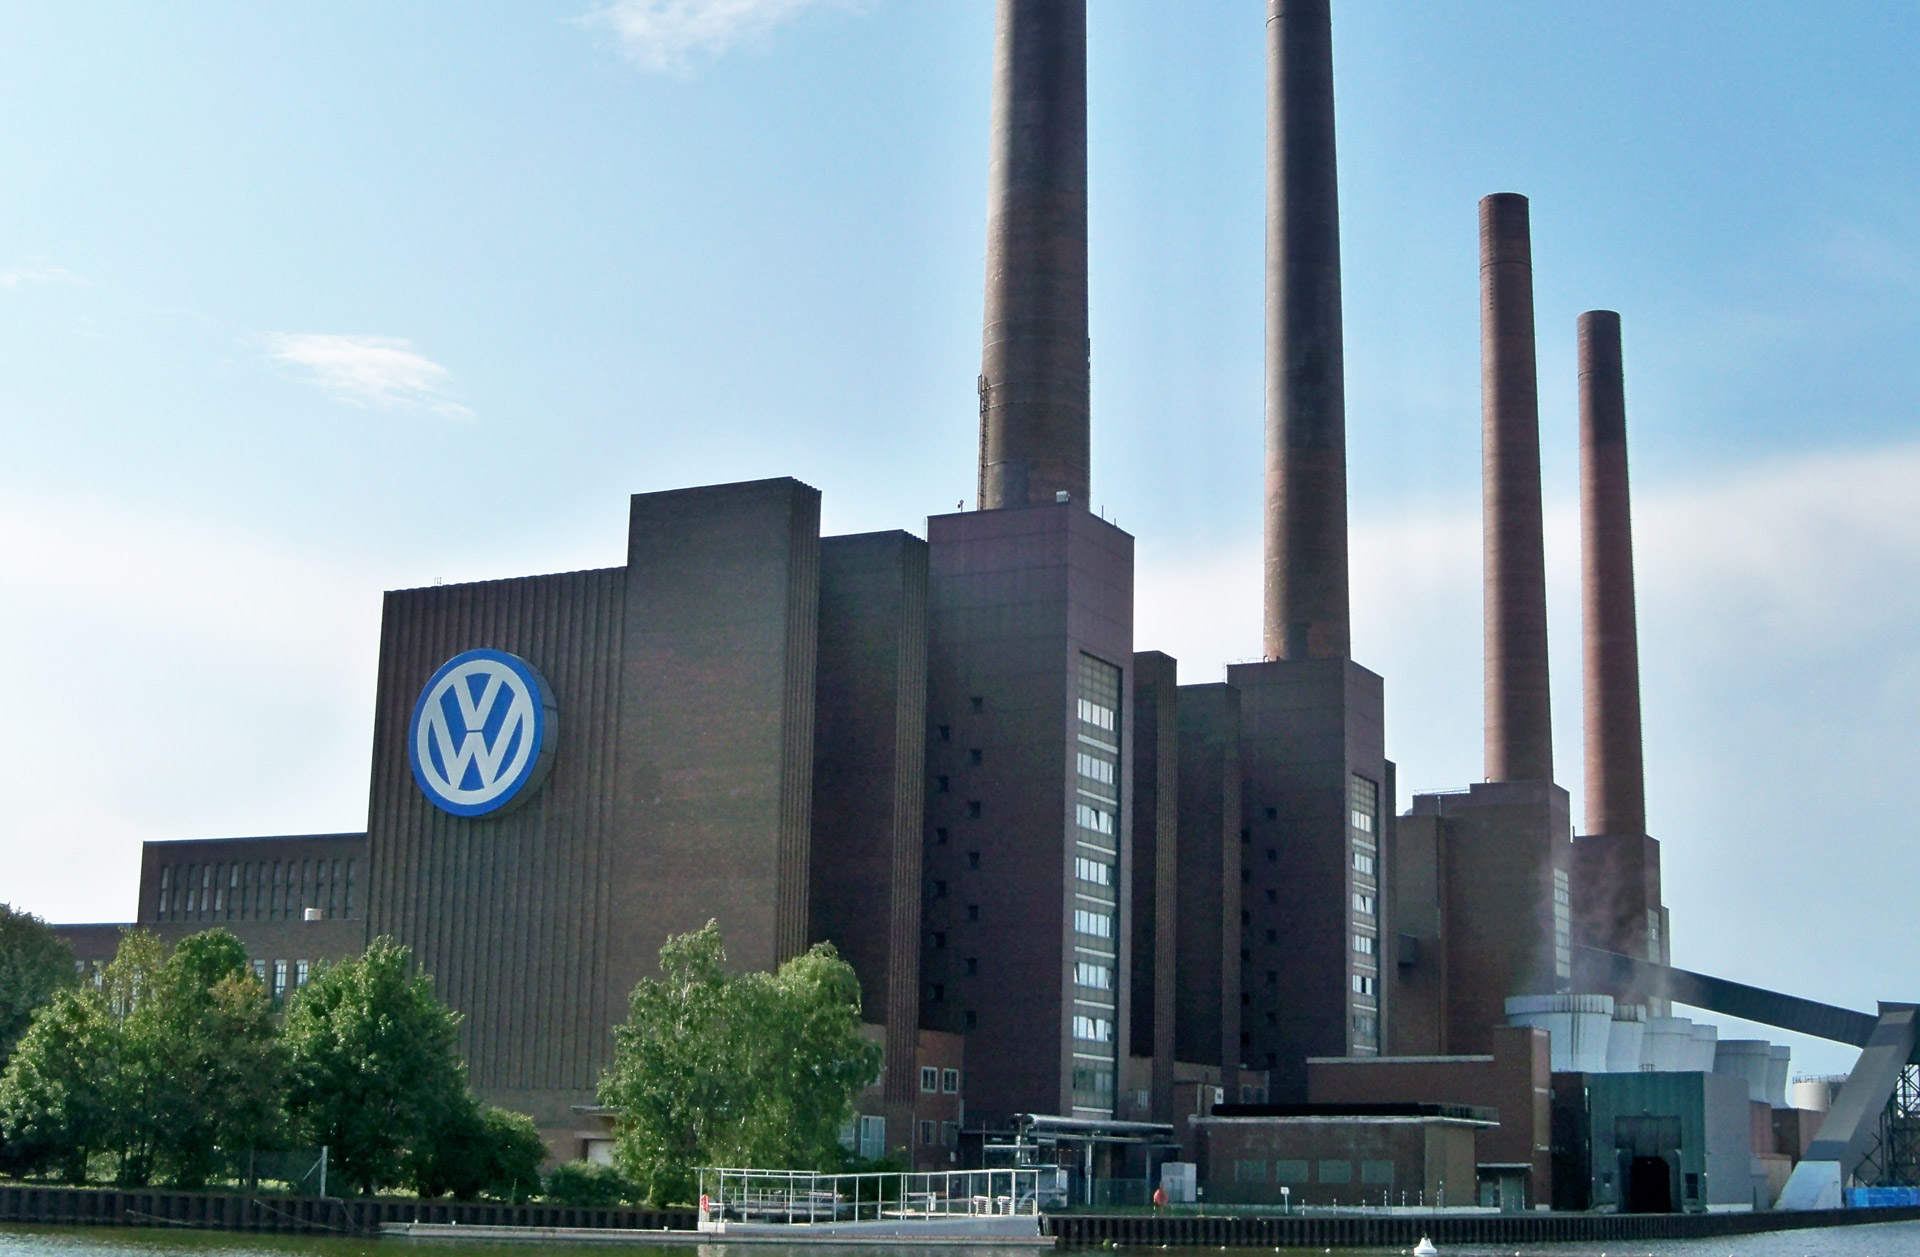 Завод по немецки. Завод Фольксваген в Германии Вольфсбург. Завод Фольксваген в Вольфсбурге. Завод компании «Volkswagen» в городе Вольфсбург (Volkswagen’s Wolfsburg Plant). Завод Volkswagen в Вольфсбурге площадь.